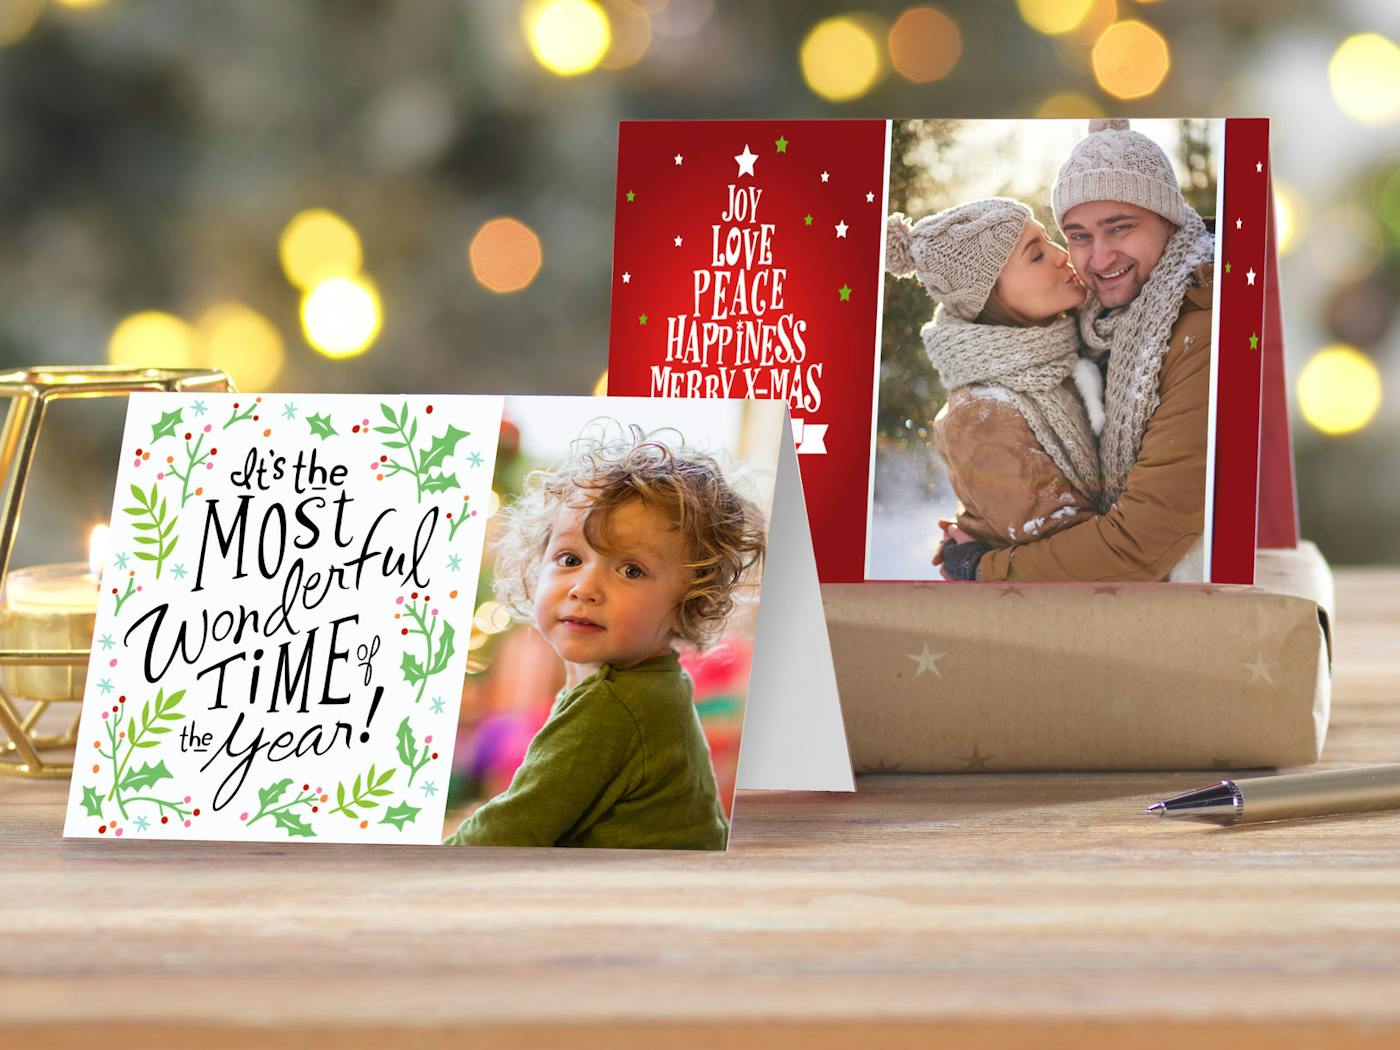 Env�a tarjetas de Navidad personalizadas hechas por ti